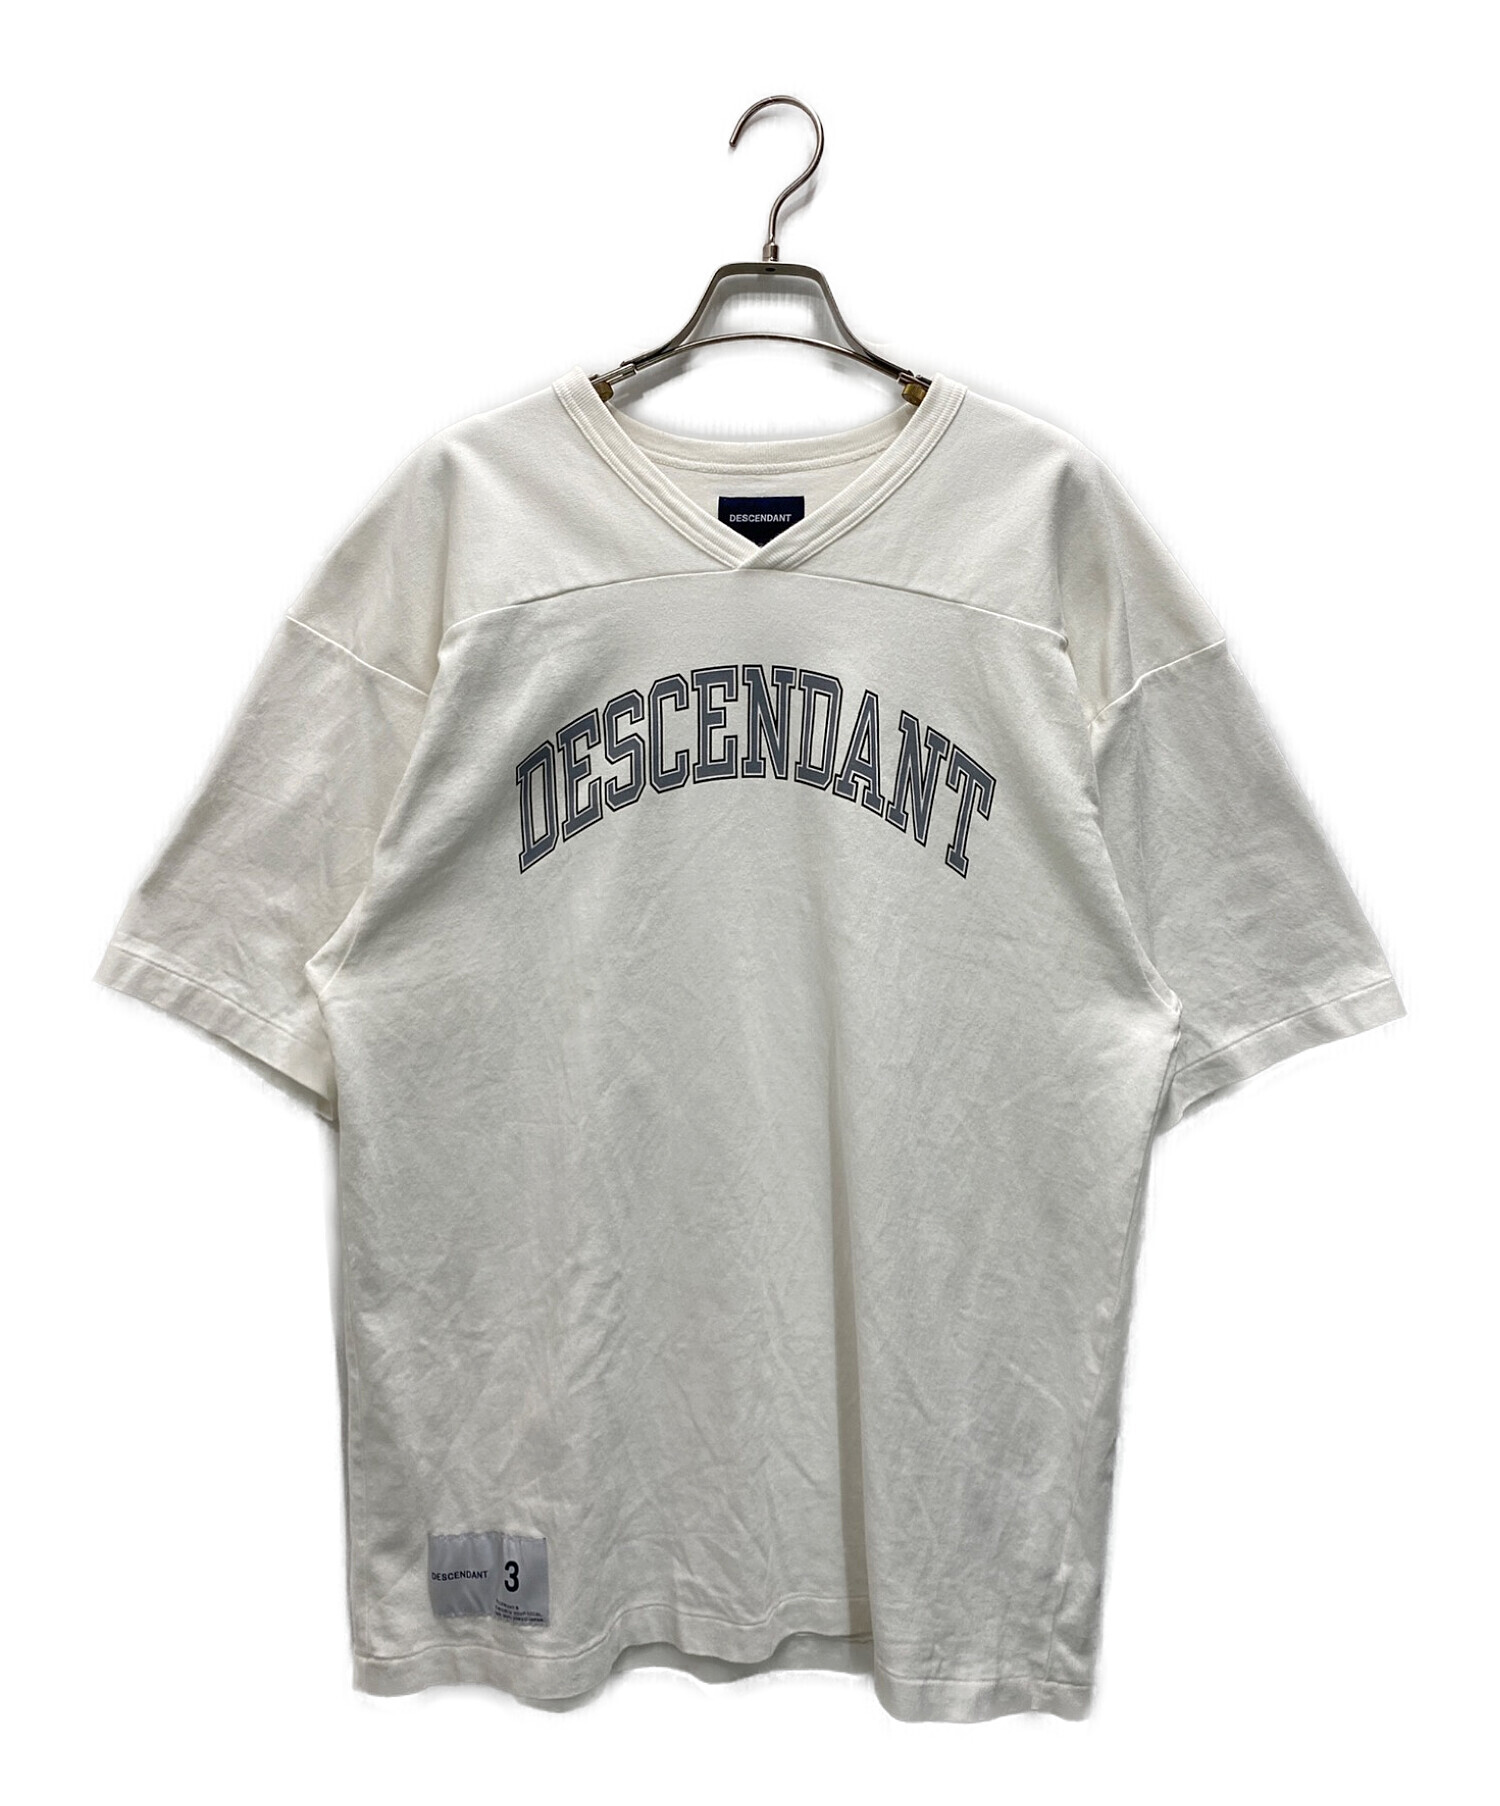 DESCENDANT (ディセンダント) フットボールTシャツ ホワイト サイズ:3